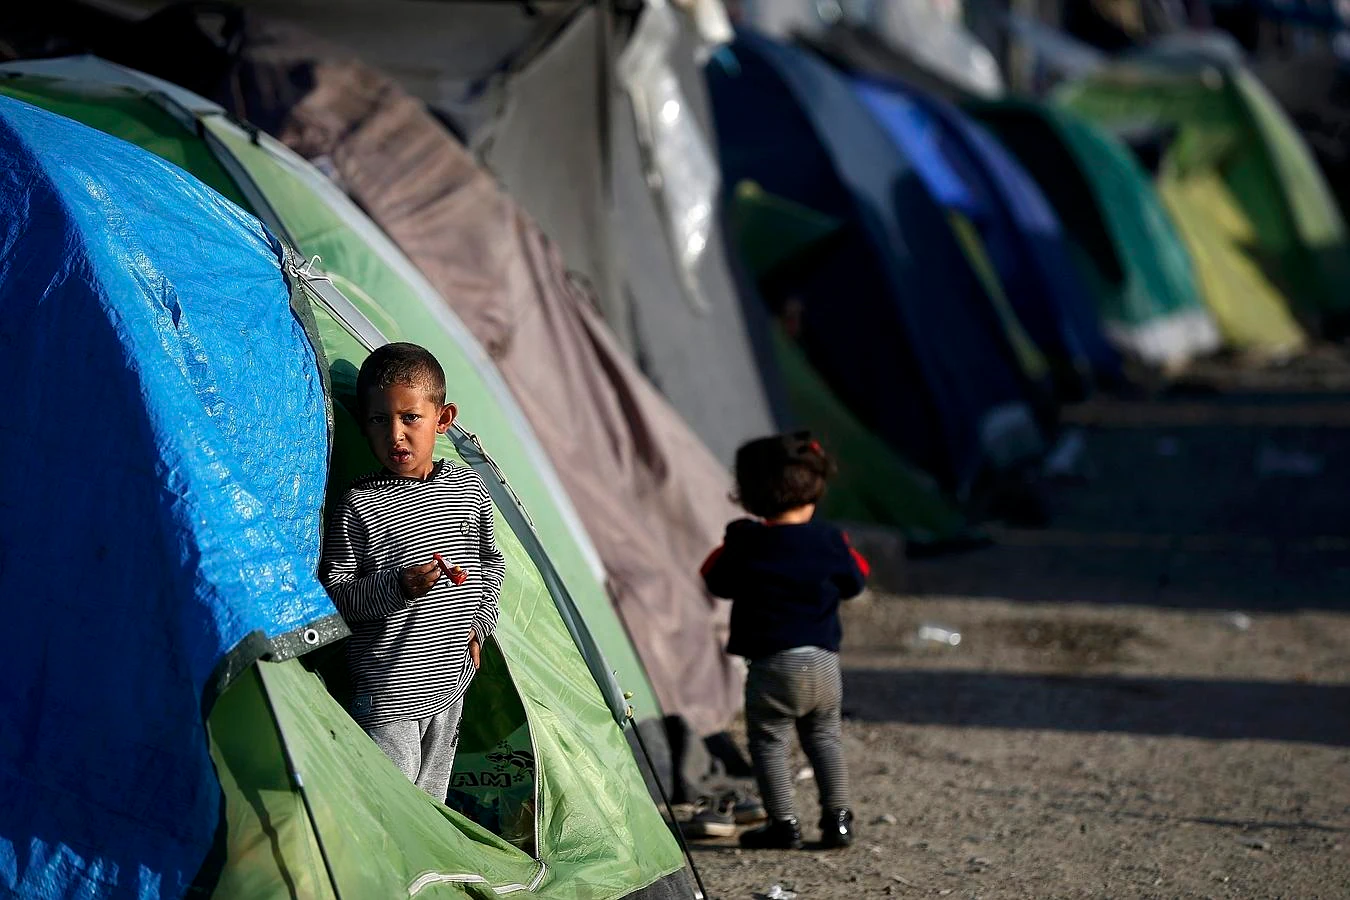 El primer ministro griego, Alexis Tsipras, aseguró el lunes que el uso de gases contra los refugiados es «una vergüenza para la civilización europea»